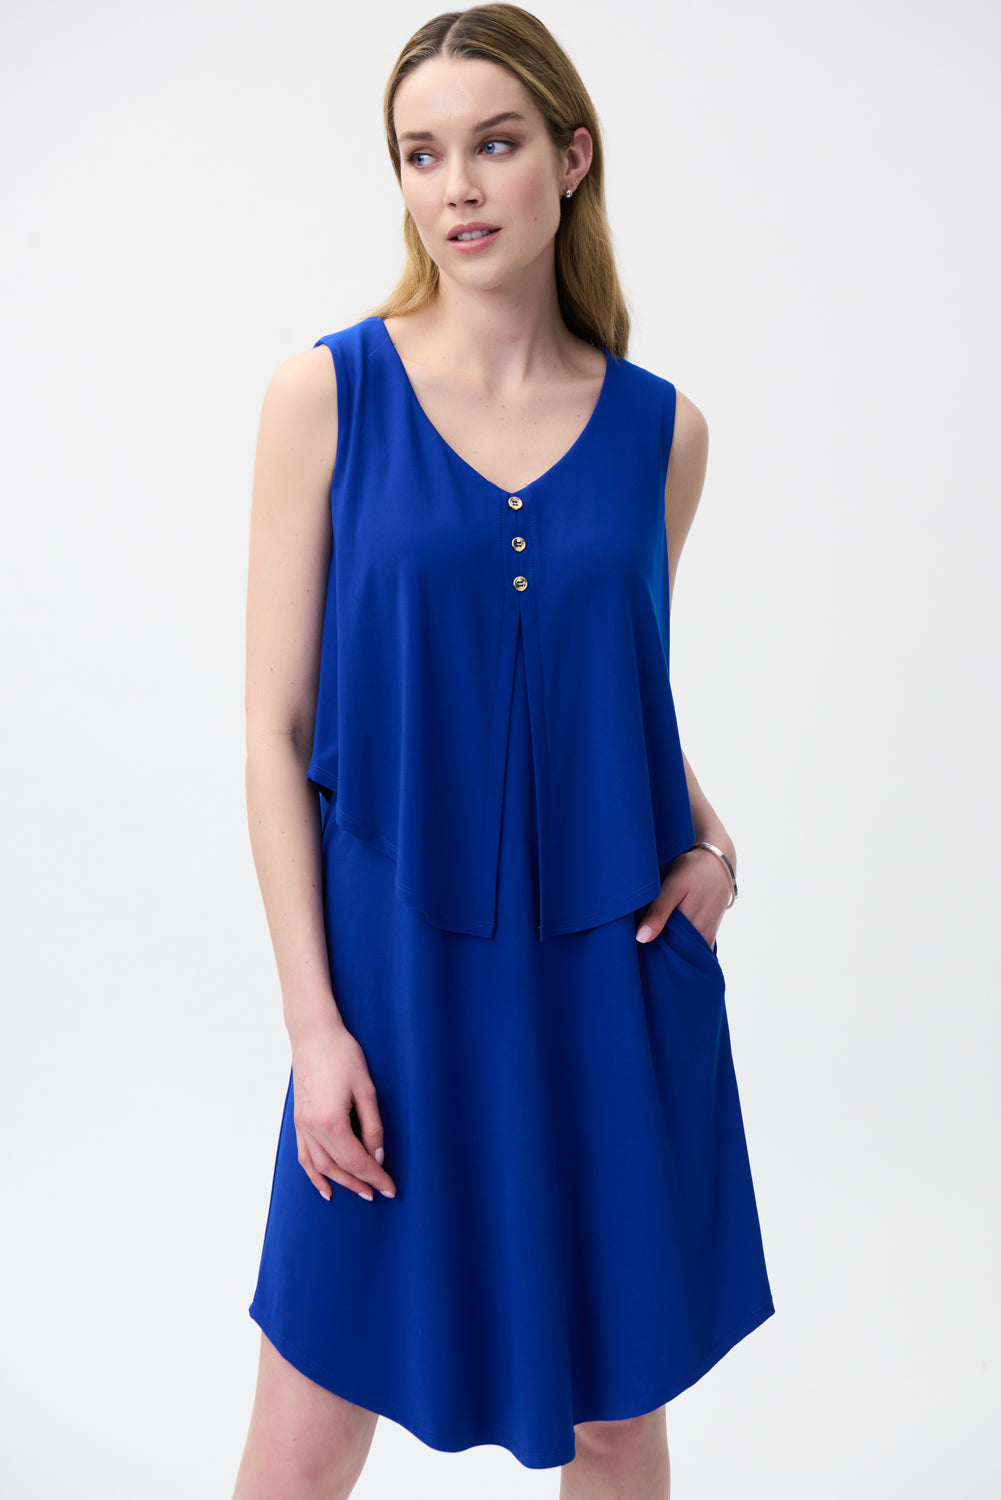 Joseph Ribkoff Royal Sleeveless Jersey Dress Style 222203